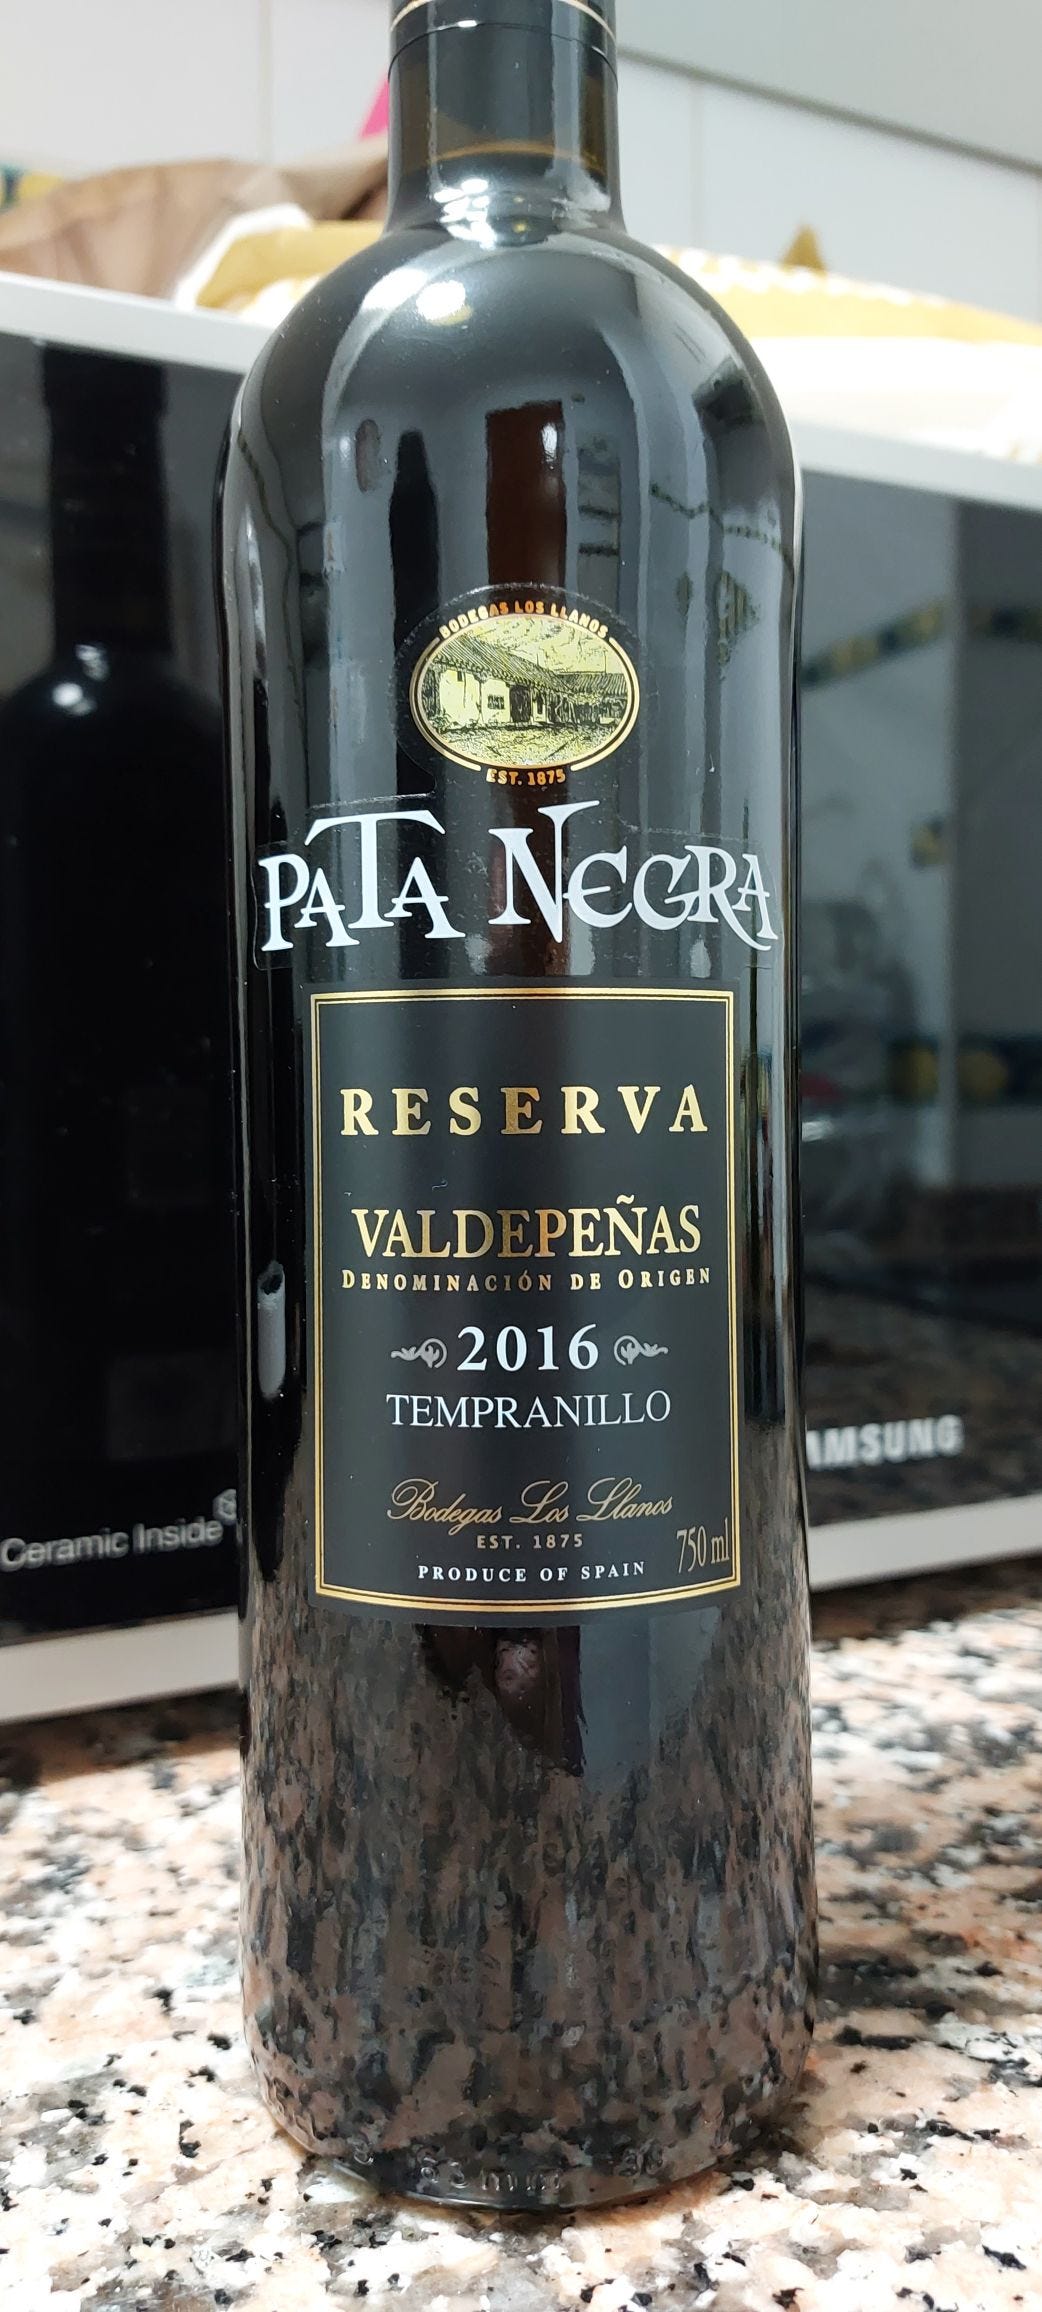 Pata Negra Vino Tinto Roble Tempranillo 2017, Red Wine